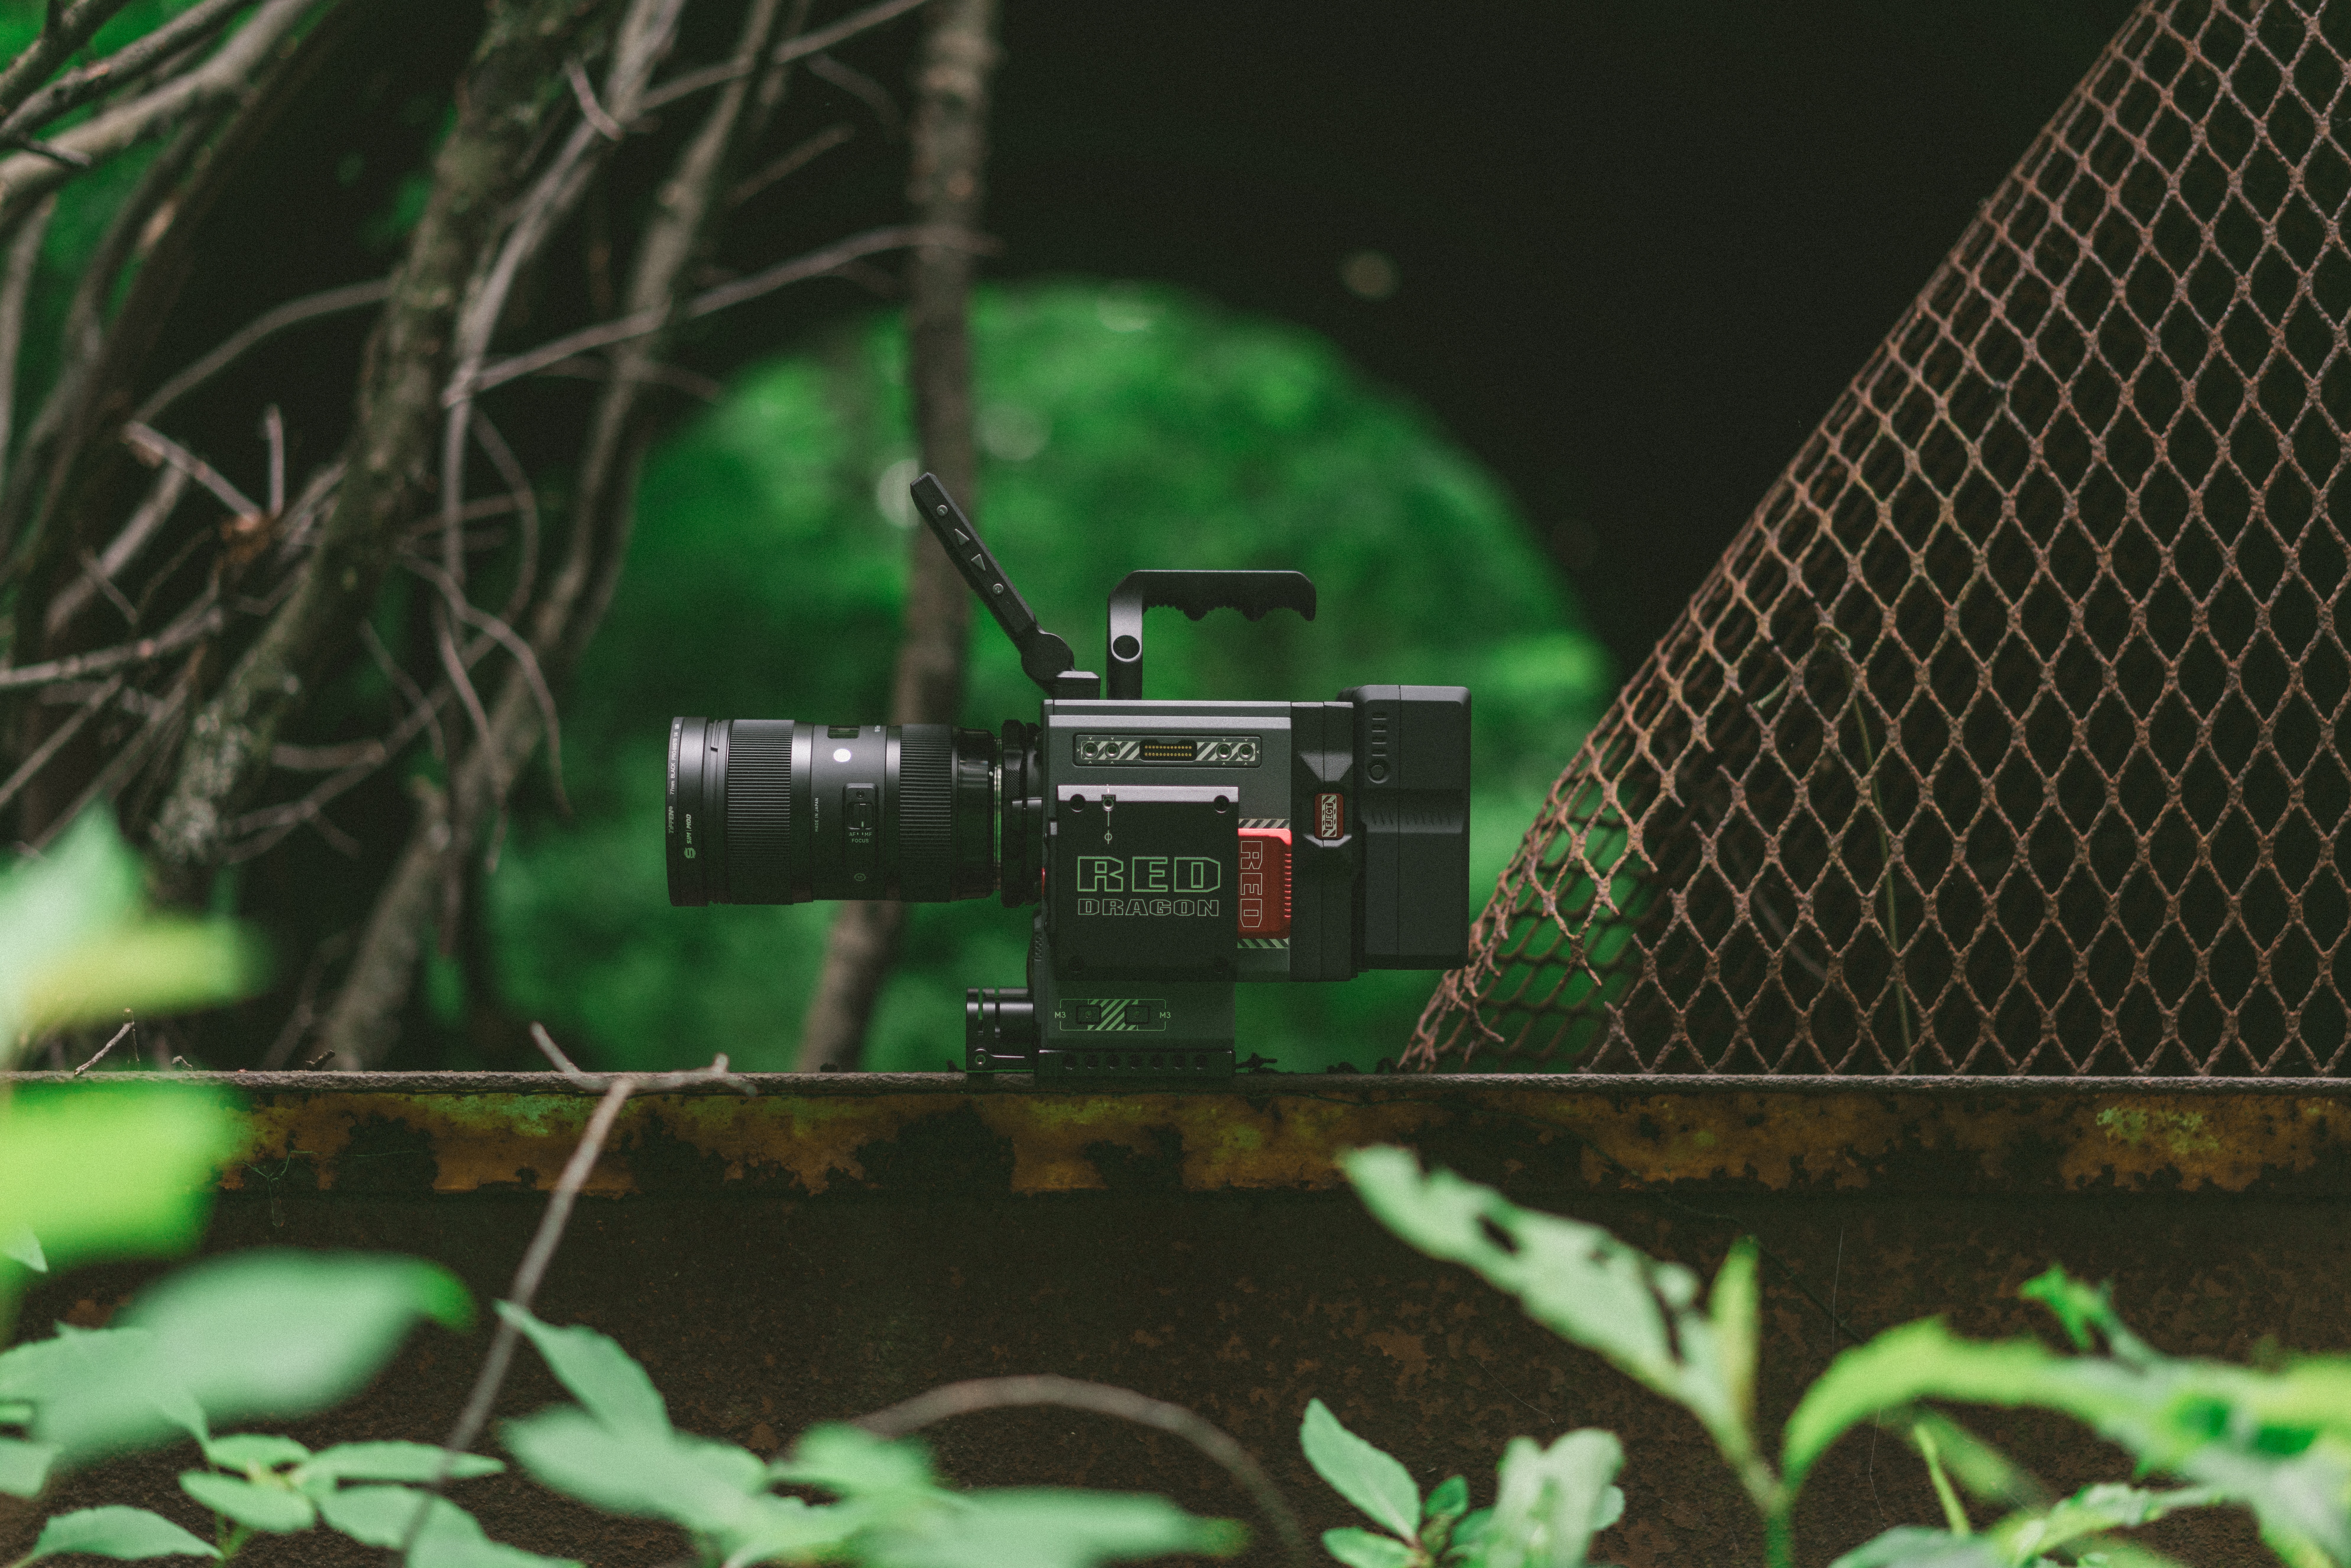 kamera postawiona na metalowej konstrukcji w pobliżu tunelu w lesie na mazowszu